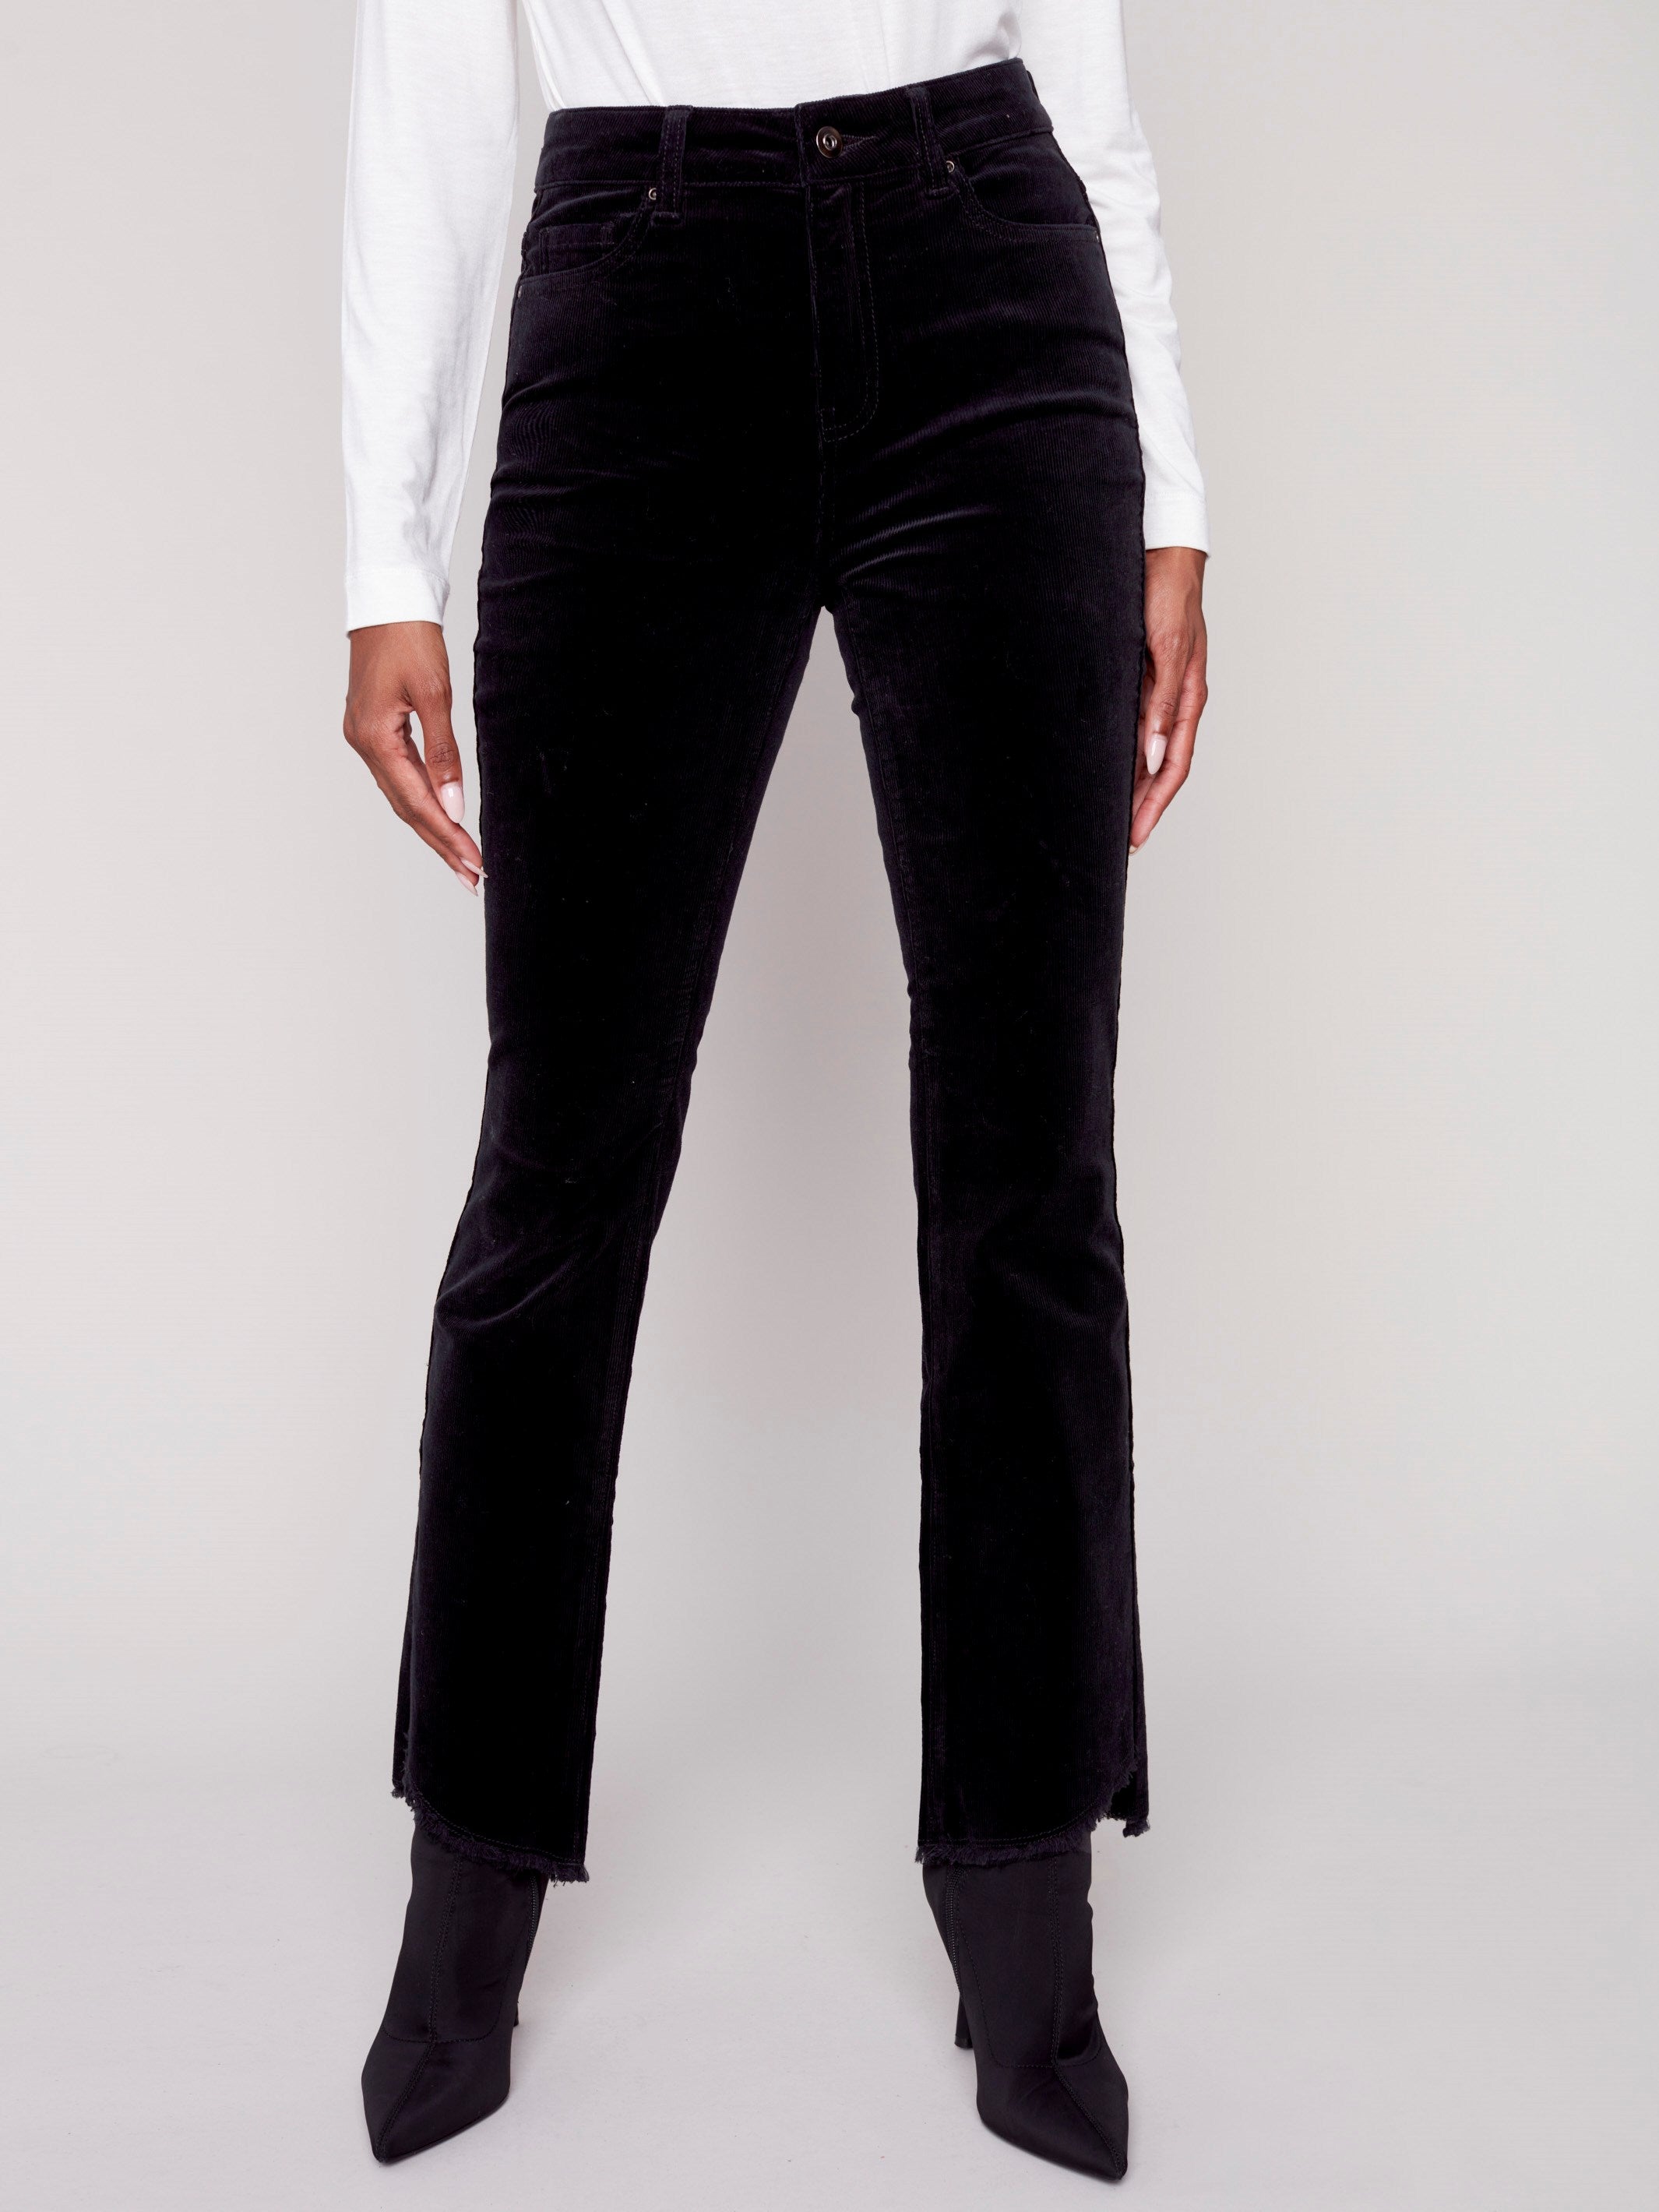 Pantalons semi-évasés en velours côtelé avec ourlet asymétrique effrangé - Noir